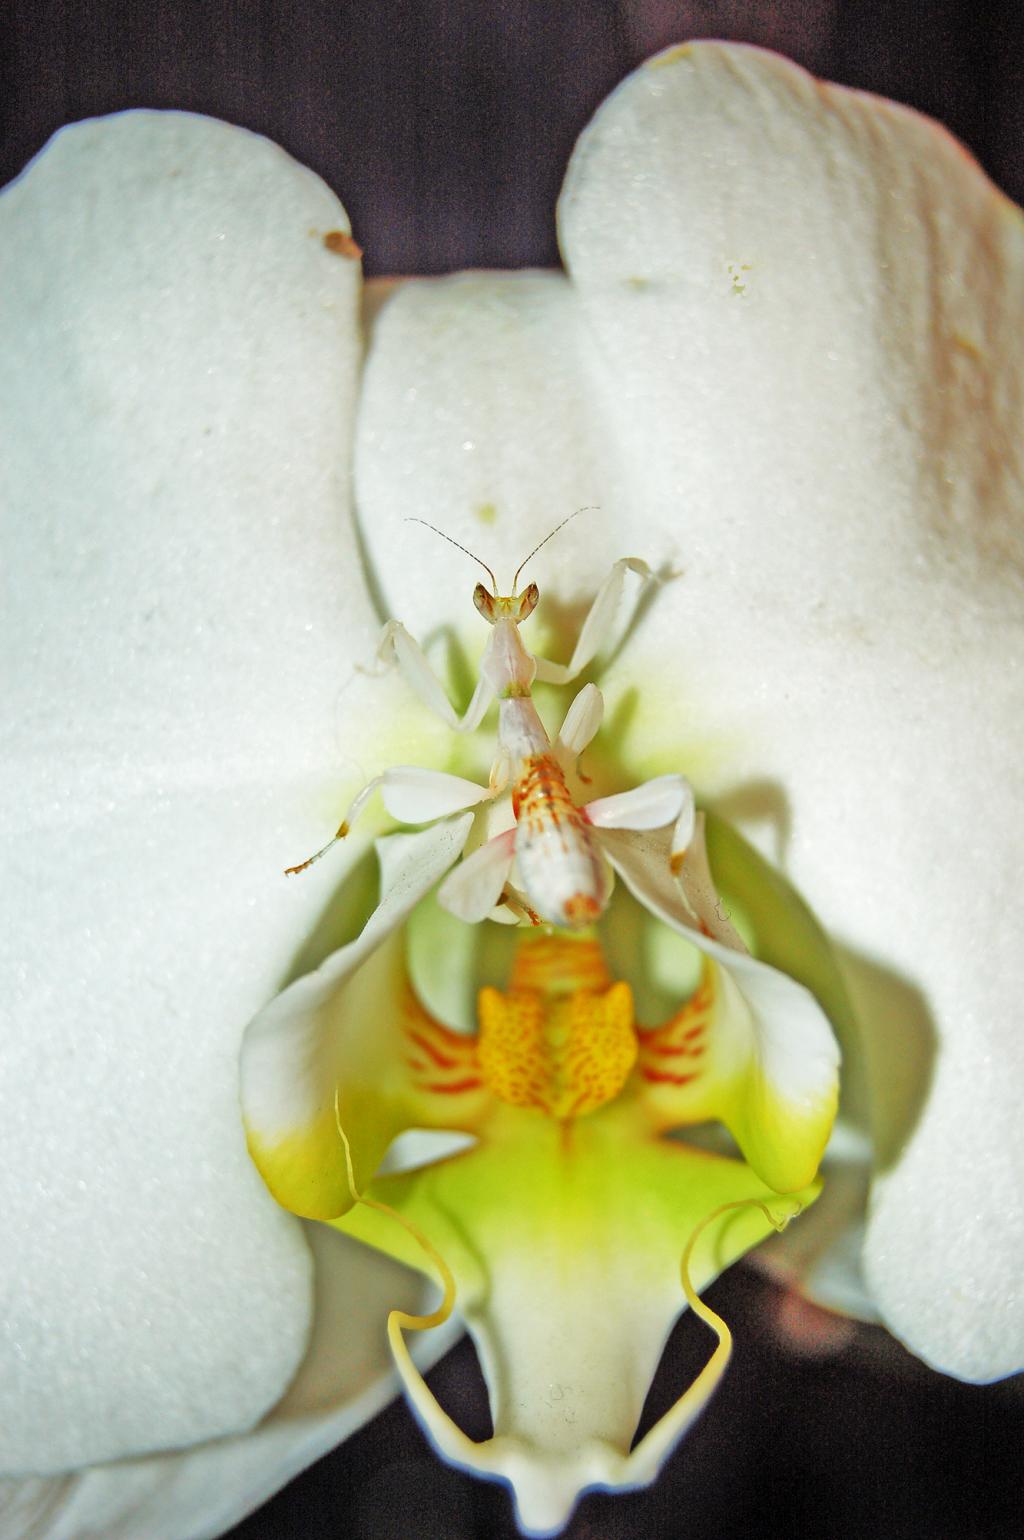 Le p'tit nouveau s'prsente ! Hym-nopus-orchid-e-1-9f8edb